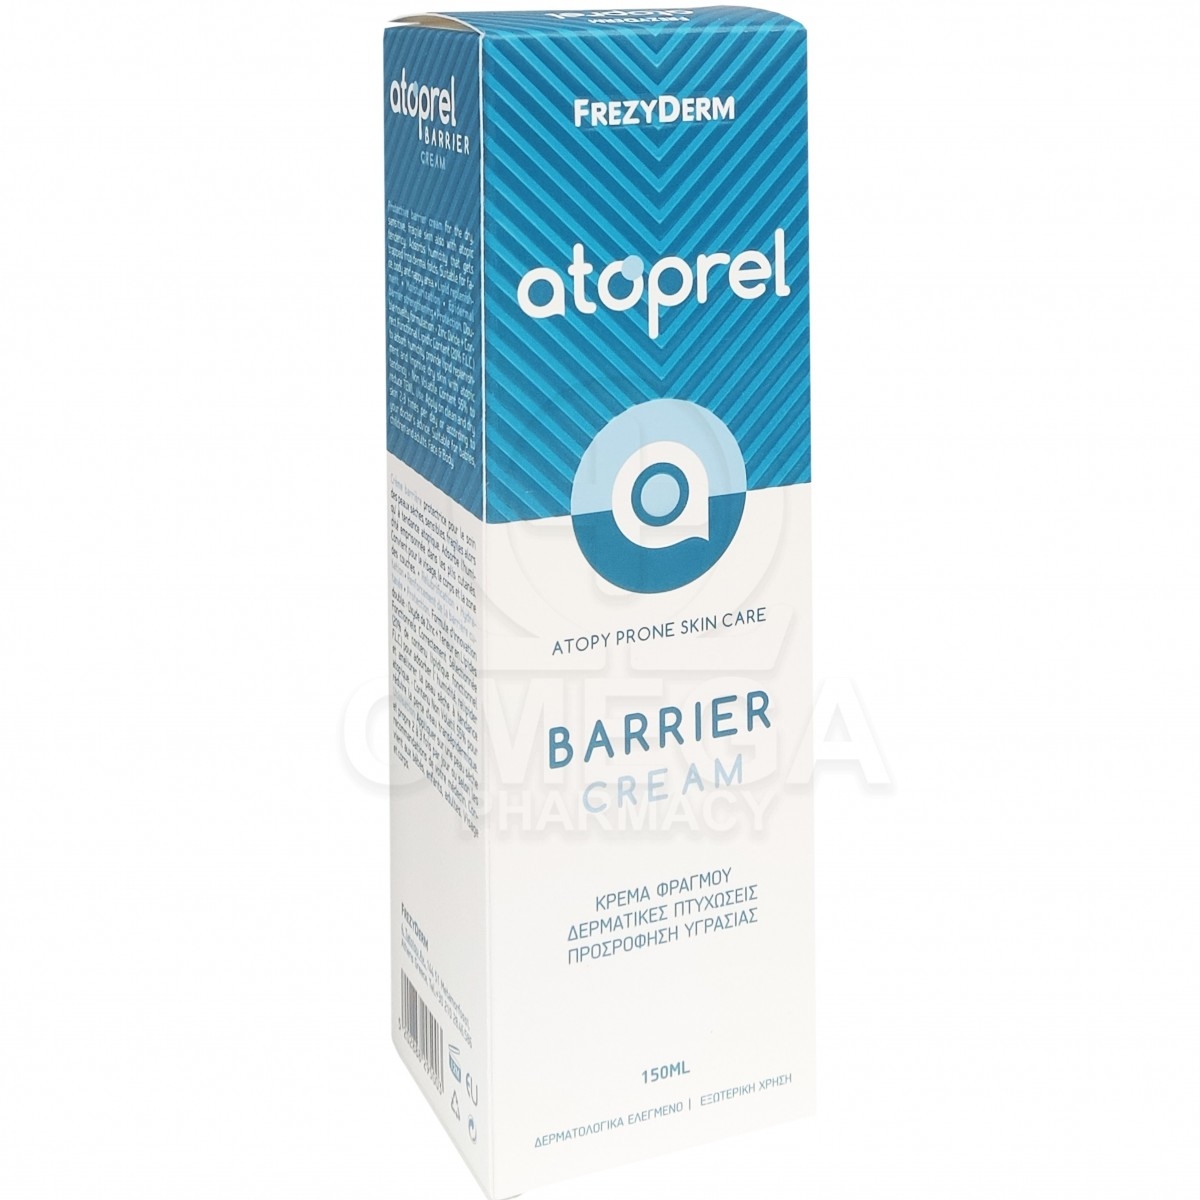 FREZYDERM Atoprel Barrier Cream Κρέμα Σώματος για την Ατοπική Δερματίτιδα,  150ml